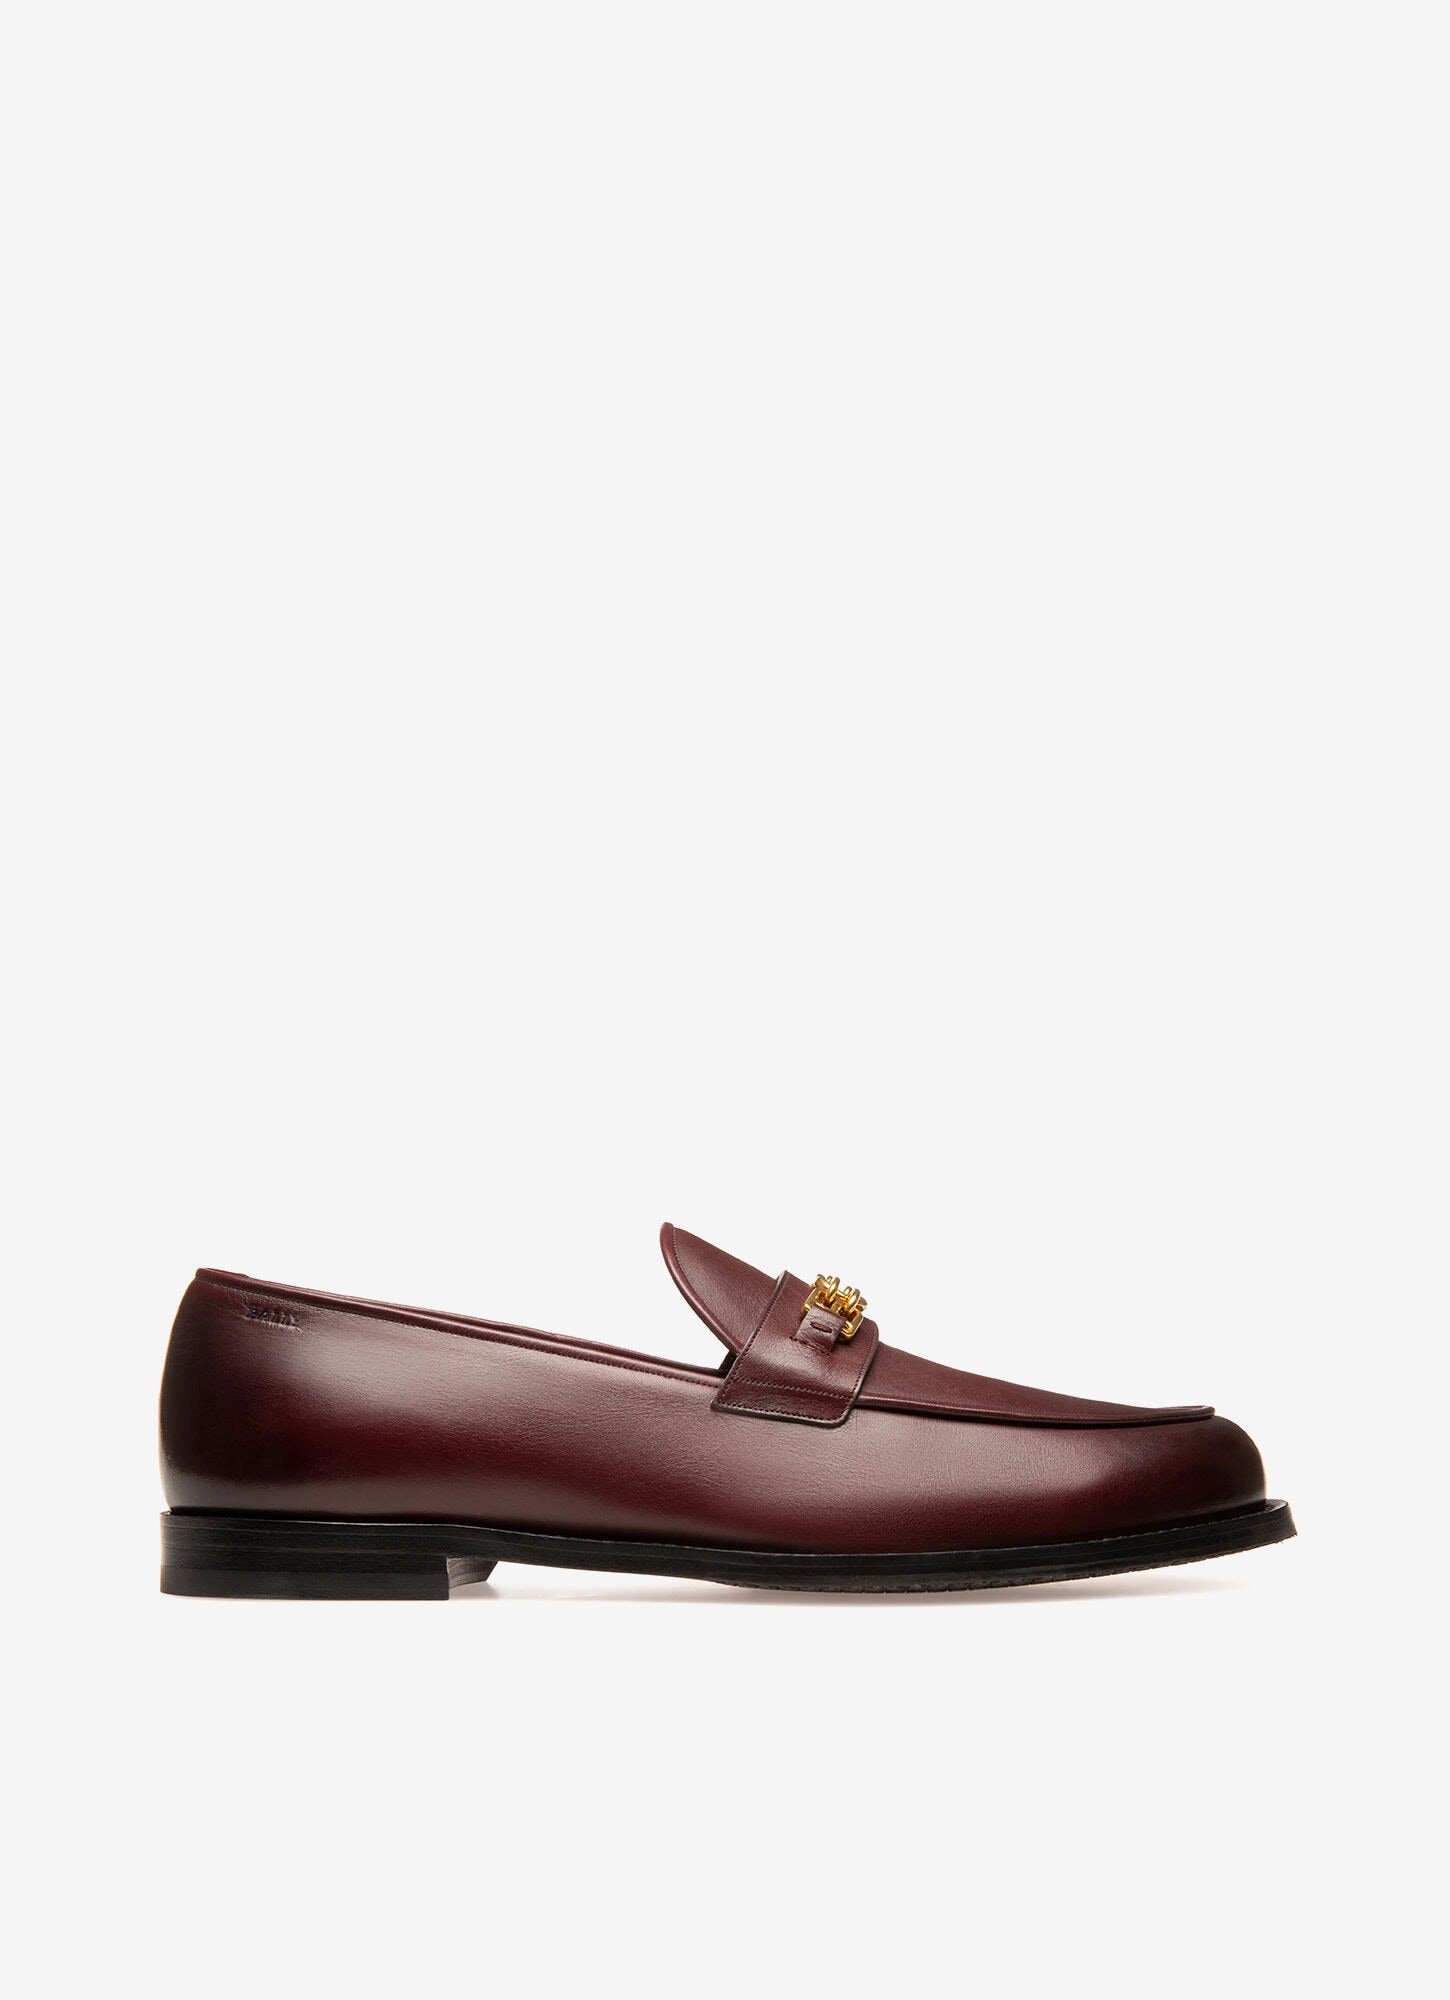 Men's Designer Loafers \u0026 Moccasins | Bally